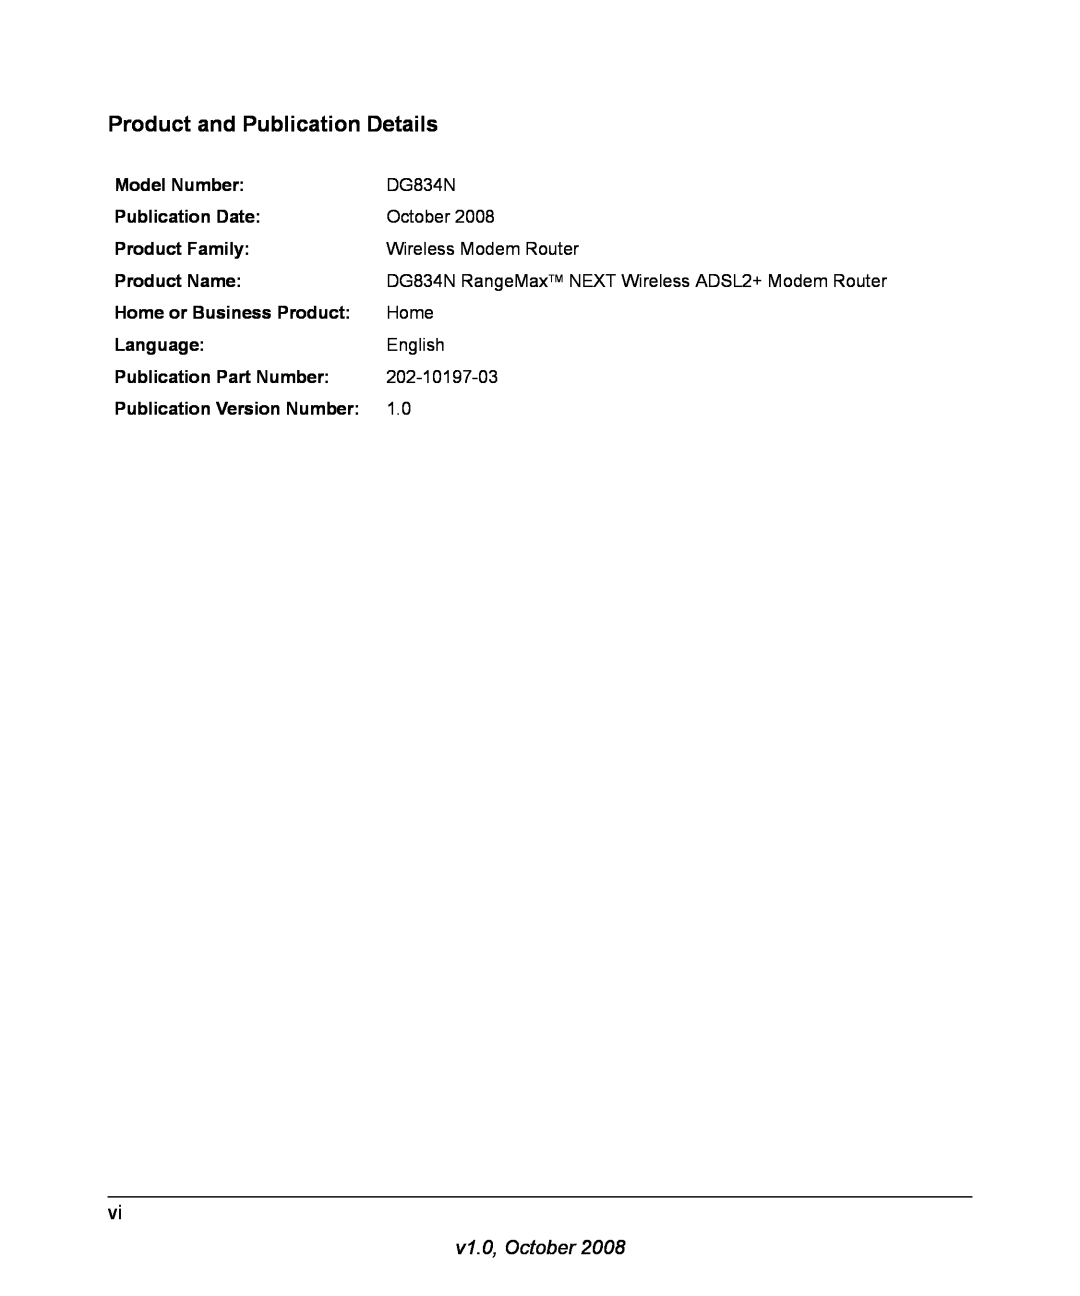 NETGEAR DG834N manual Product and Publication Details, v1.0, October 